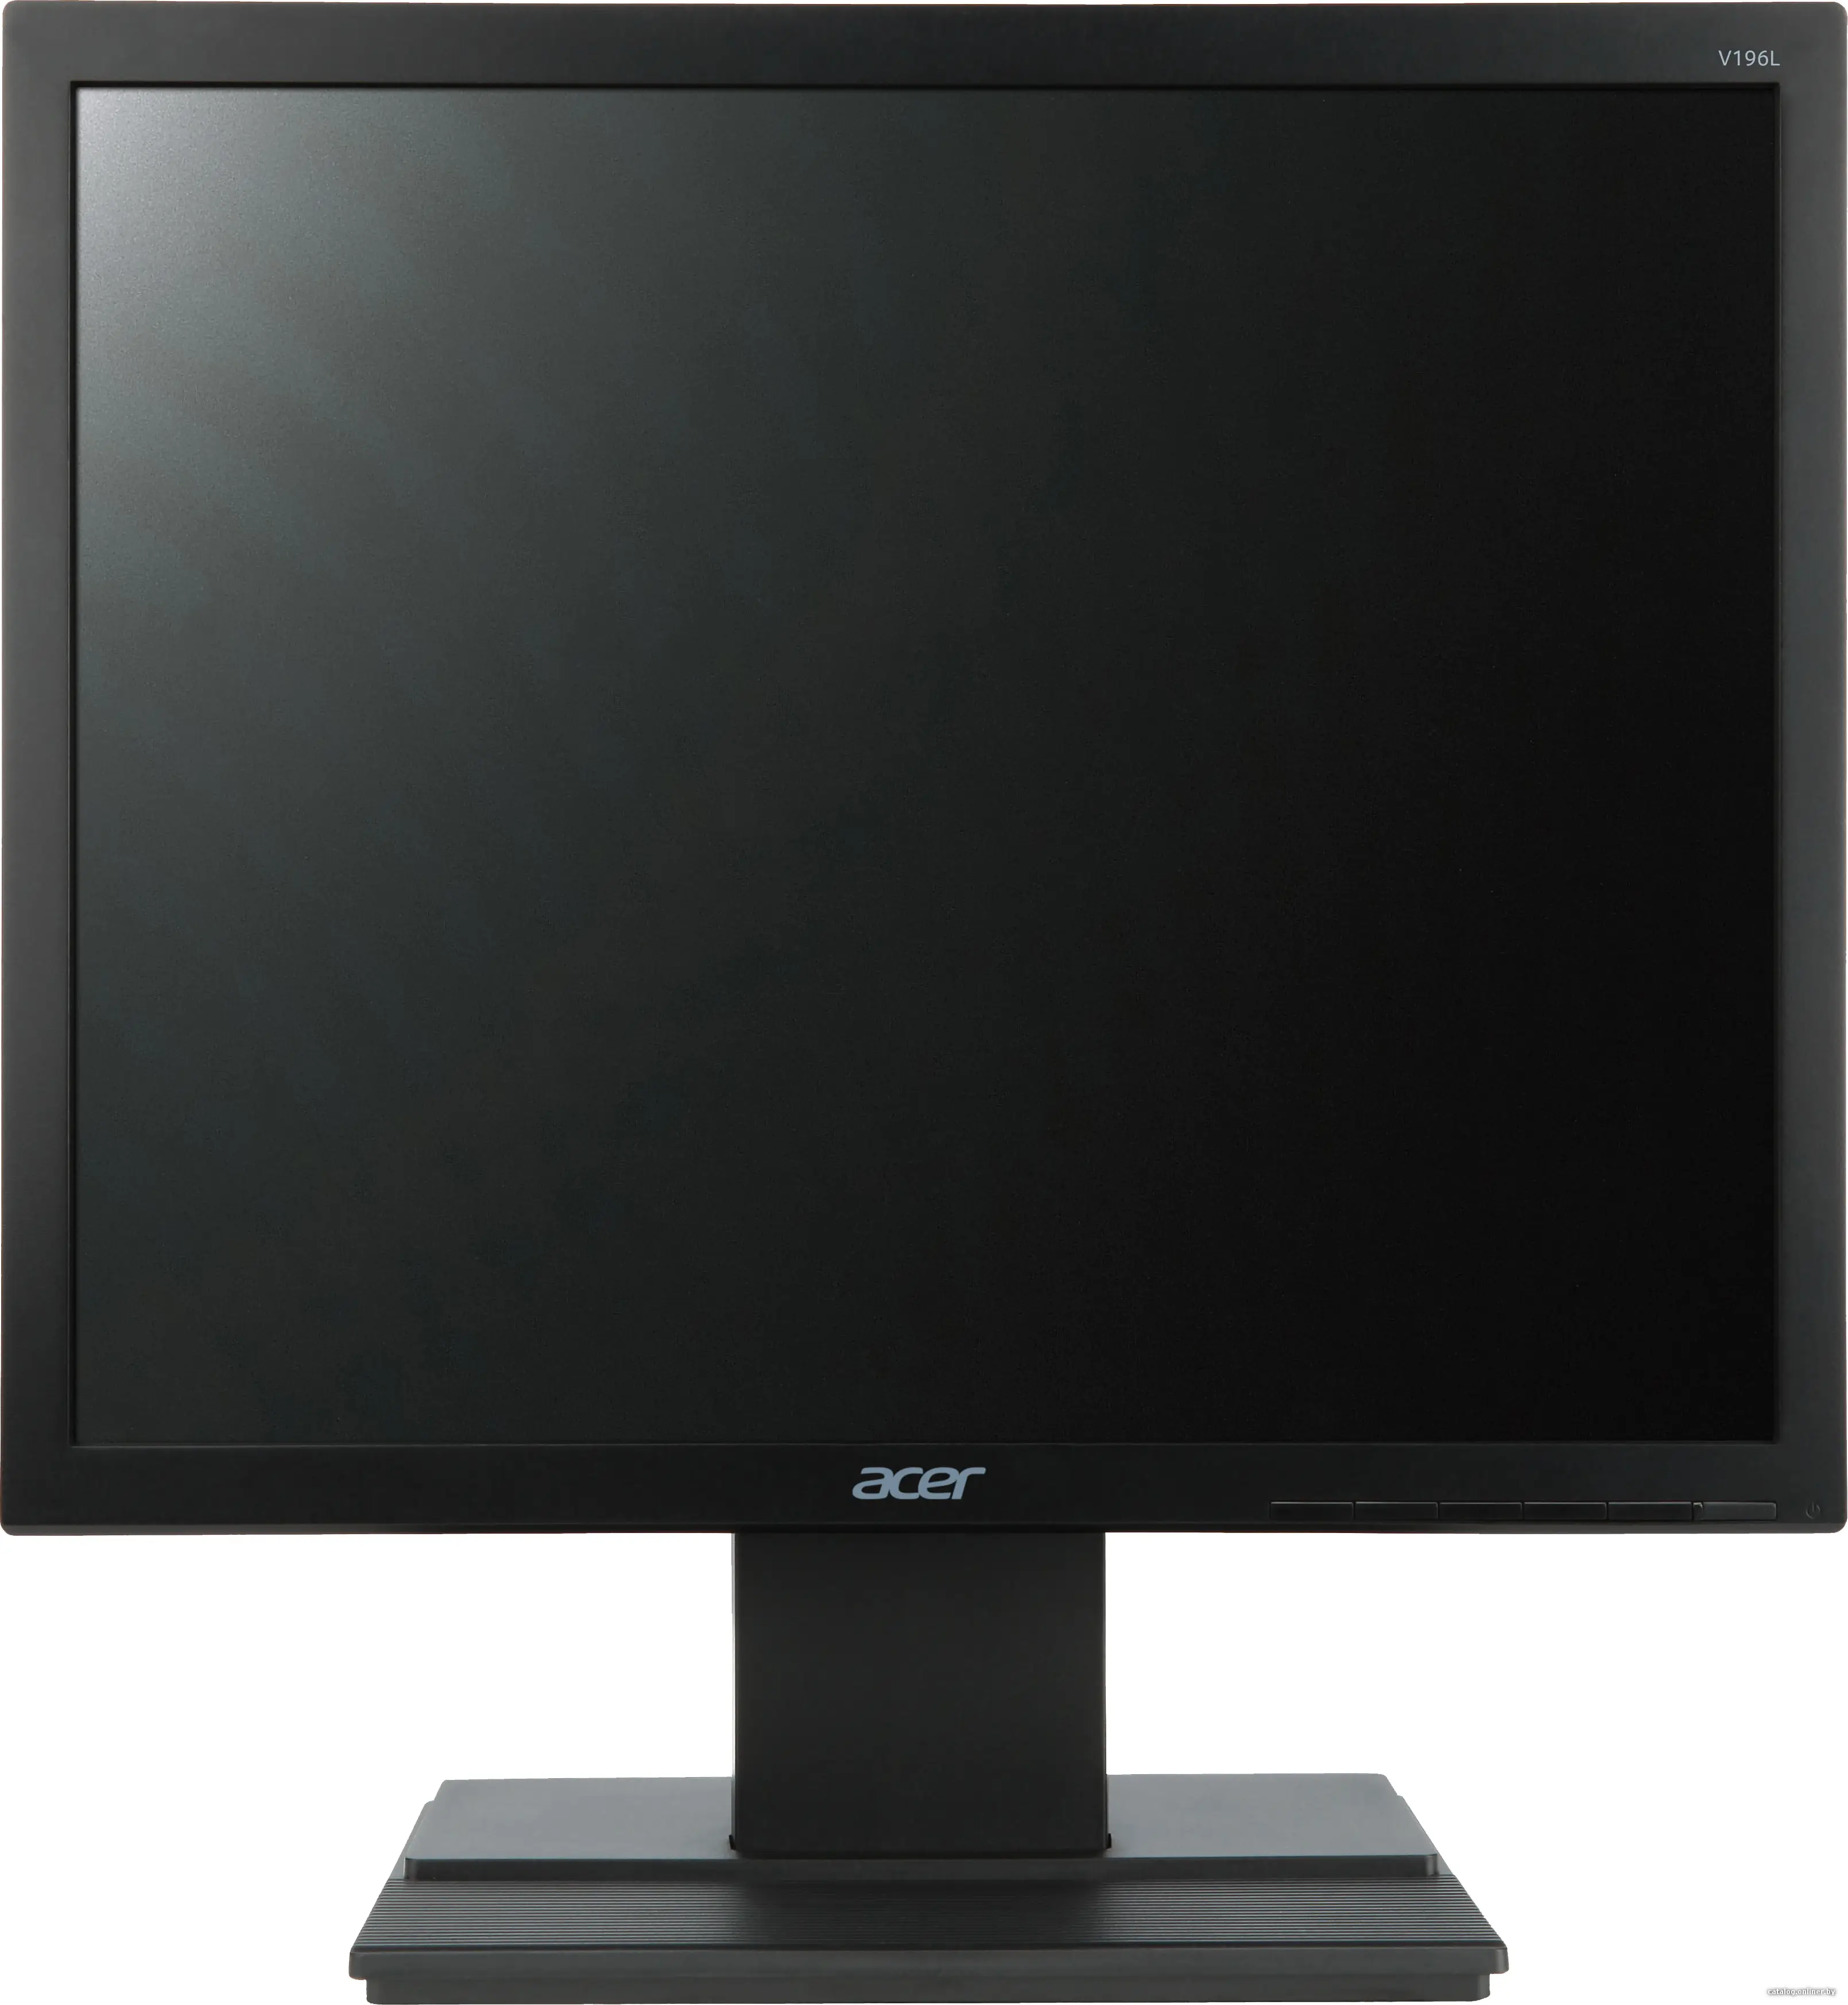 Купить Монитор 19' Acer V196LBb черный, цена, опт и розница